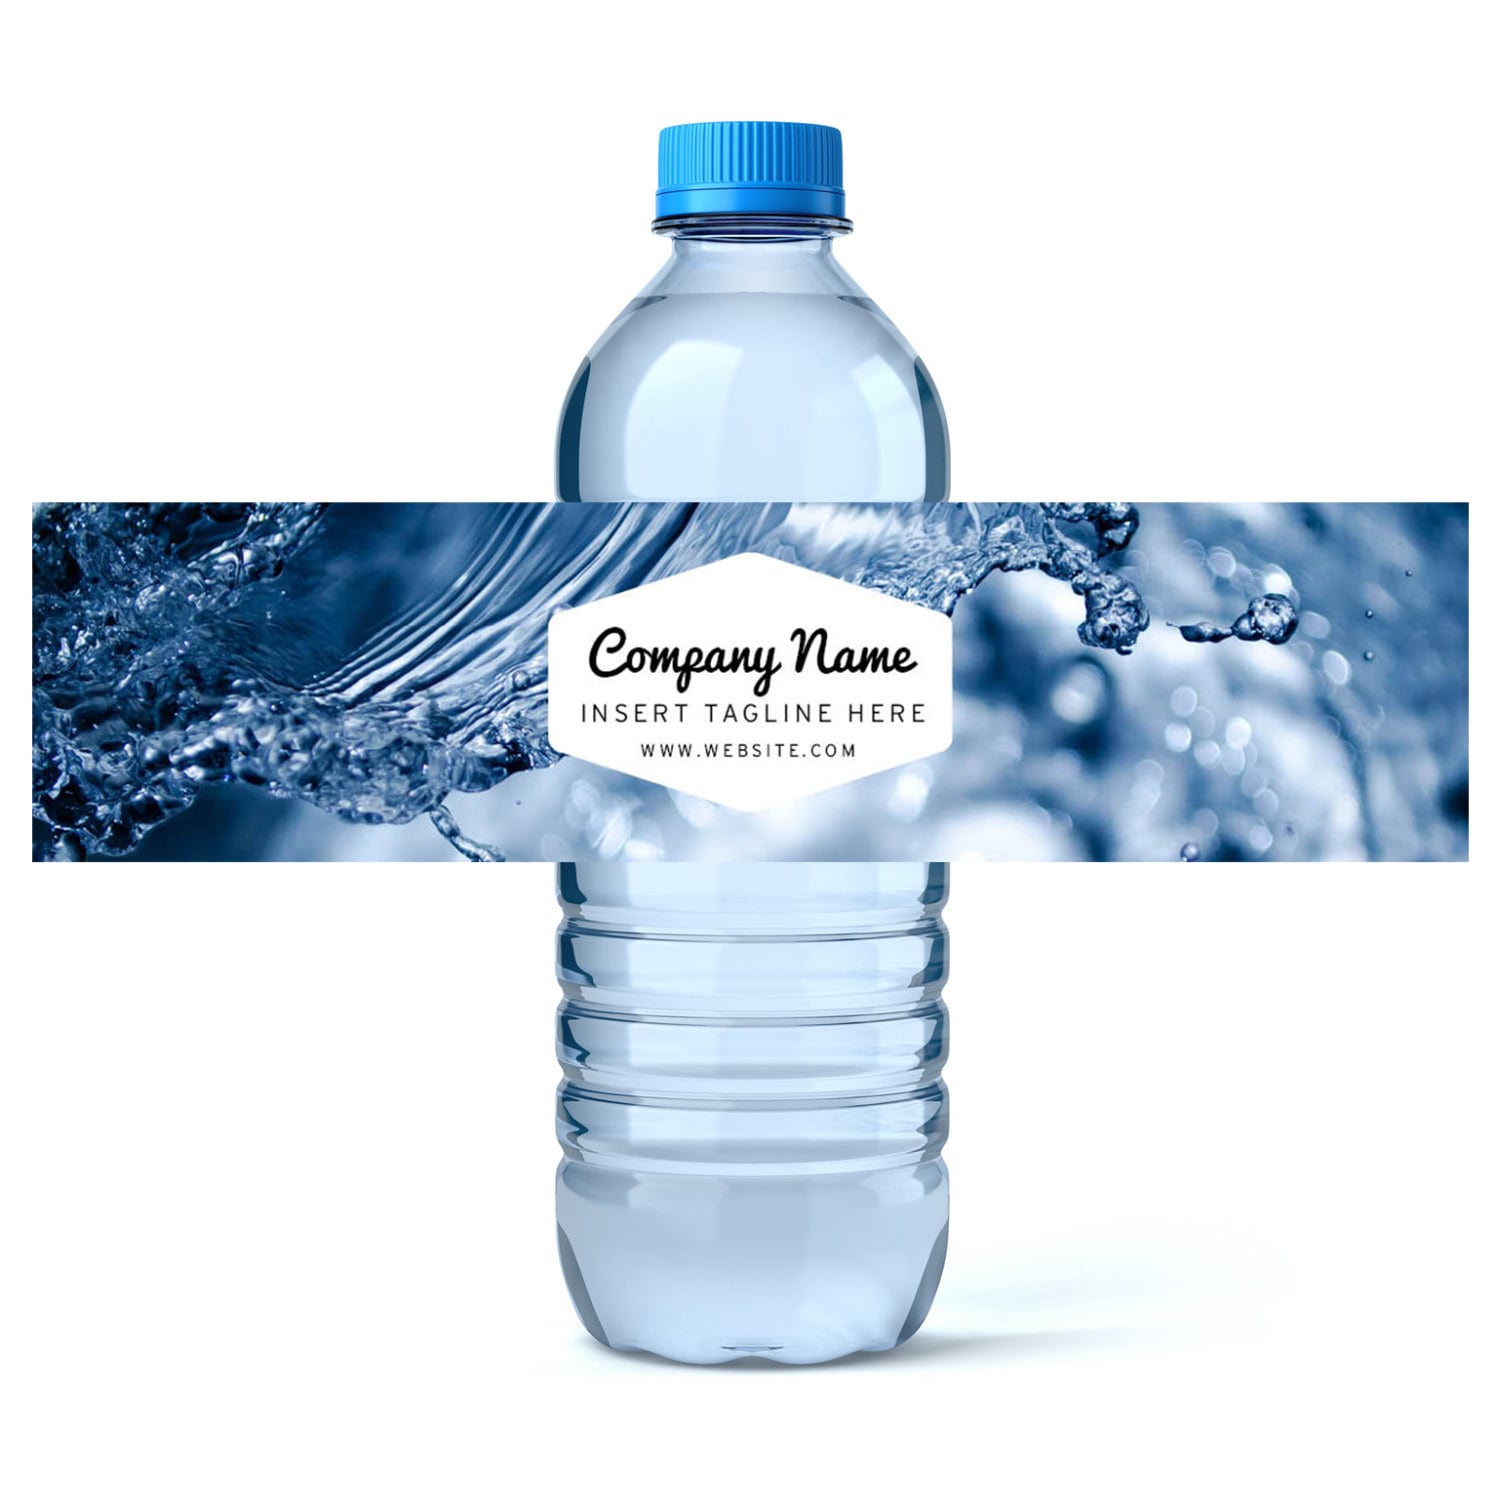 Custom Water Bottle Label Template